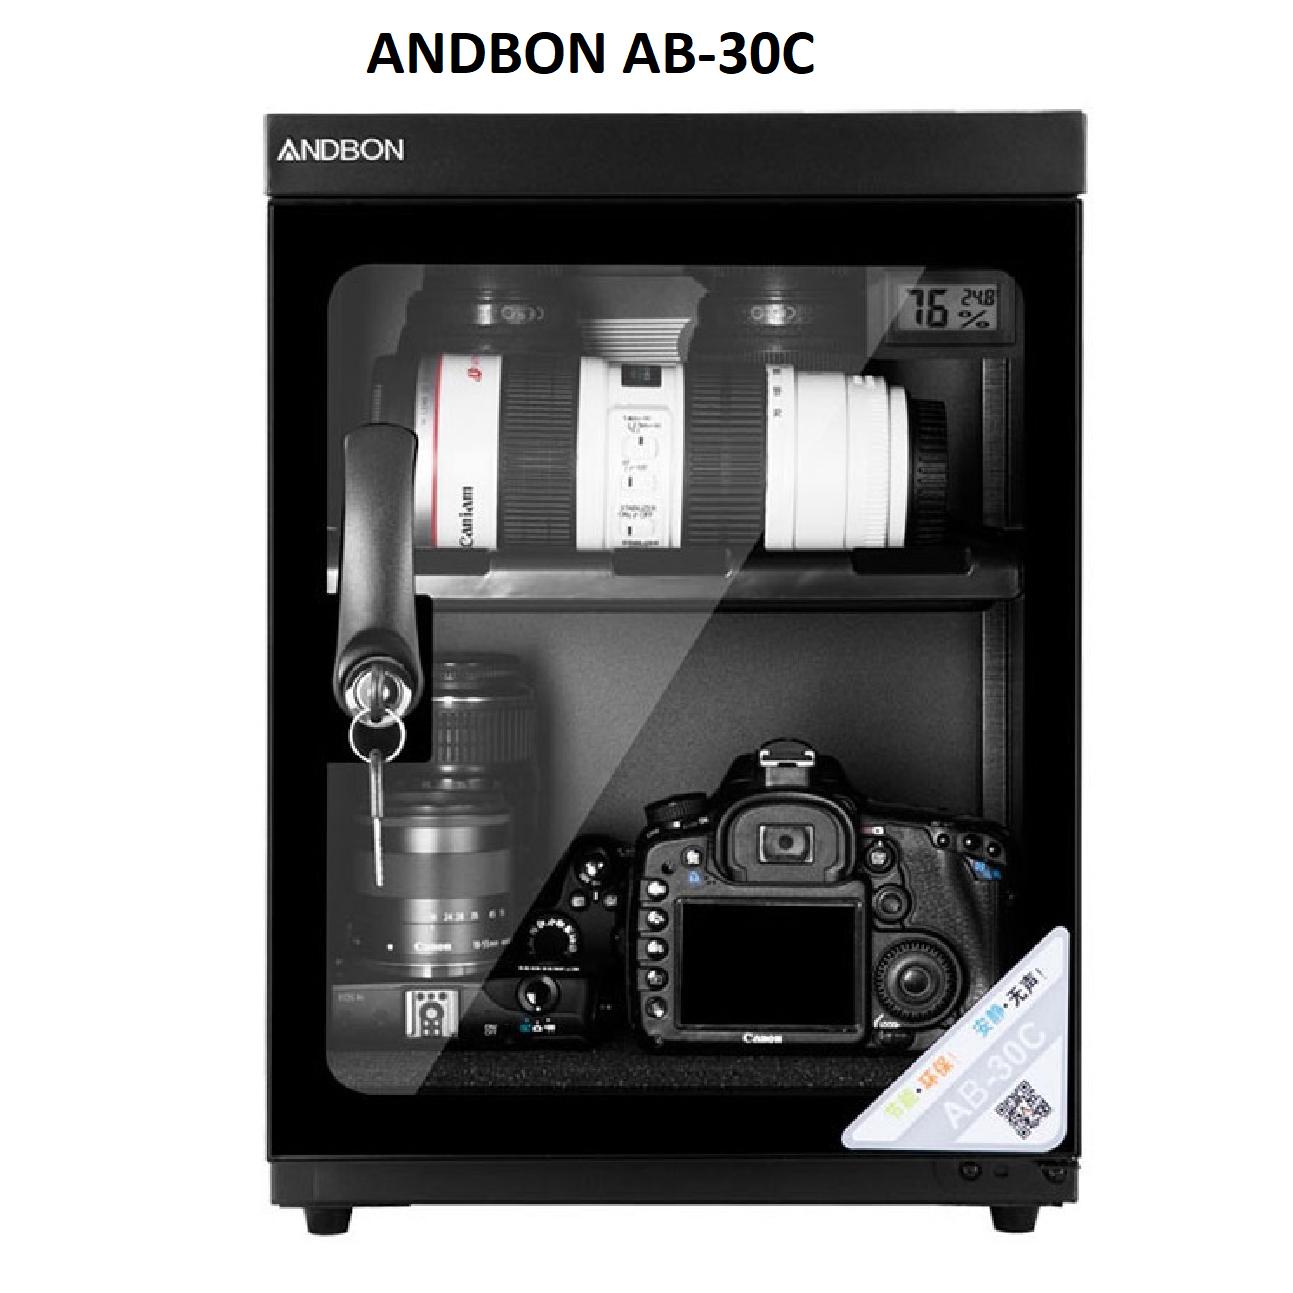 Tủ chống ẩm Andbon AB-30C ( 30 Lít) - Công nghệ Japan + Bộ vệ sinh máy ảnh 8 in...